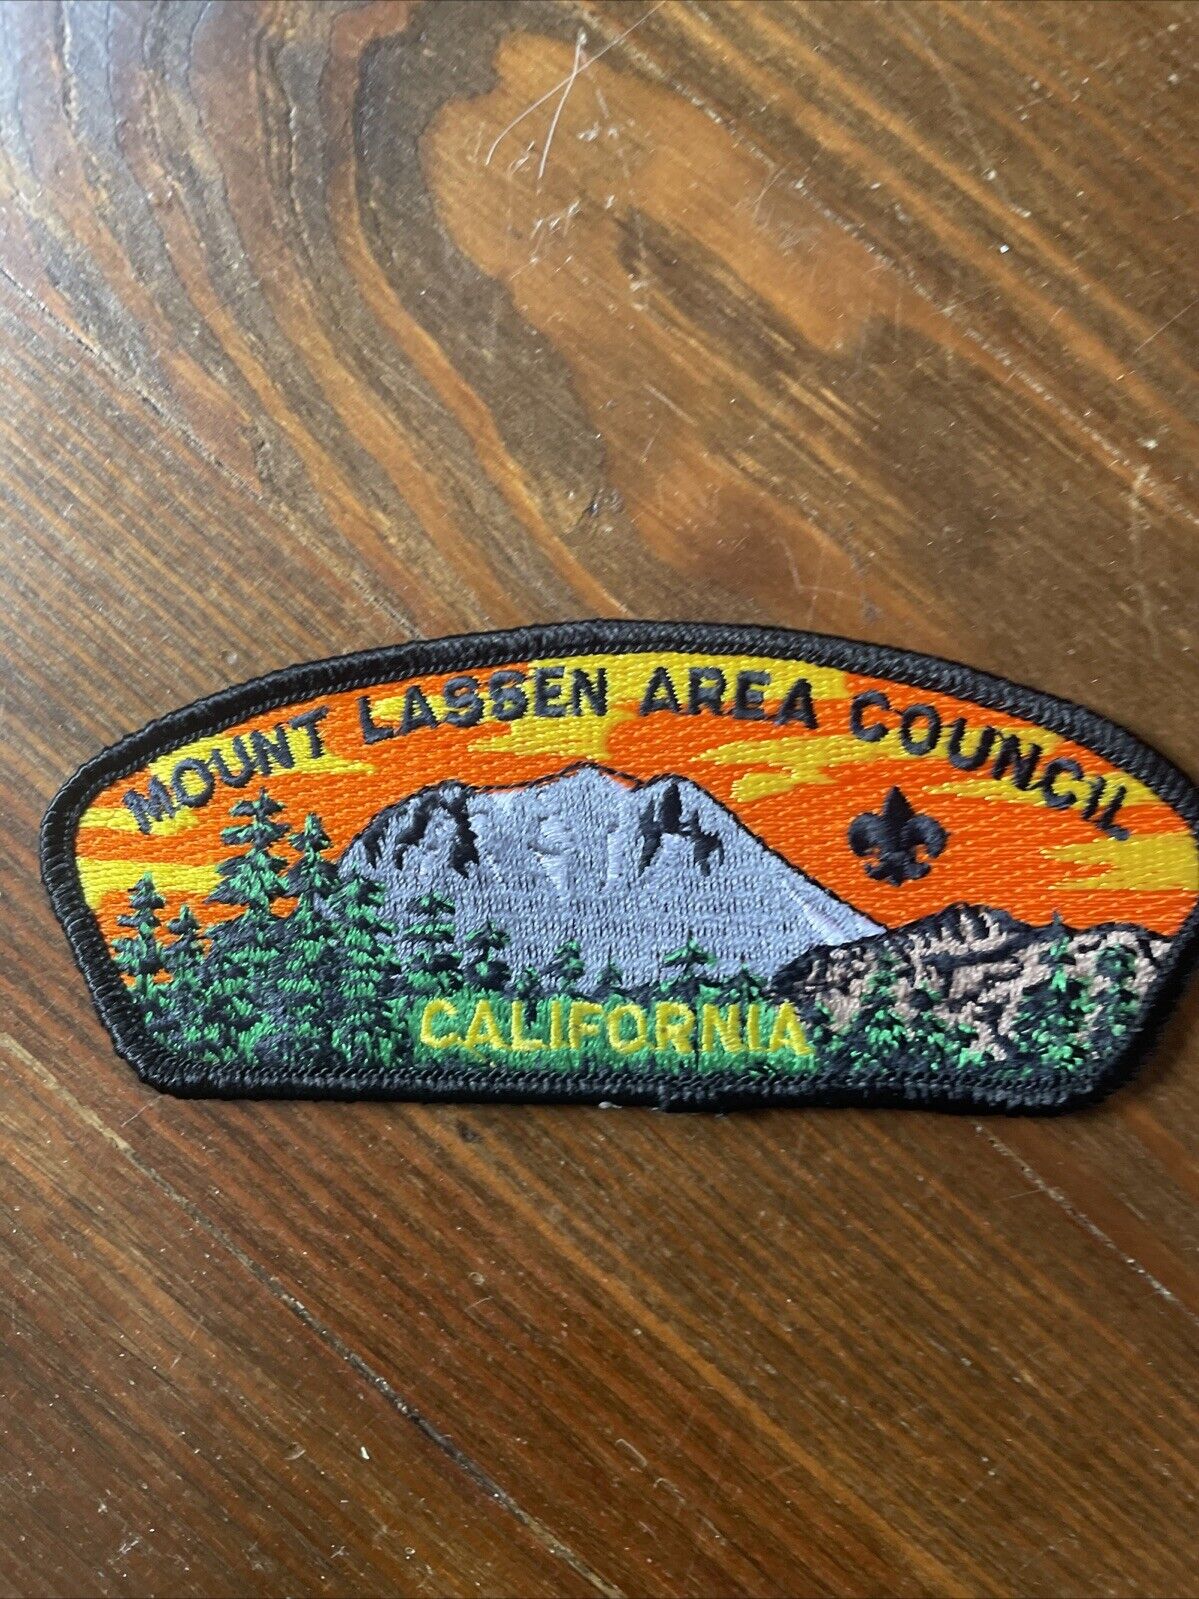 Unused Vintage Mount Lassen Area Council Calif. Boy Scout CSP Patch